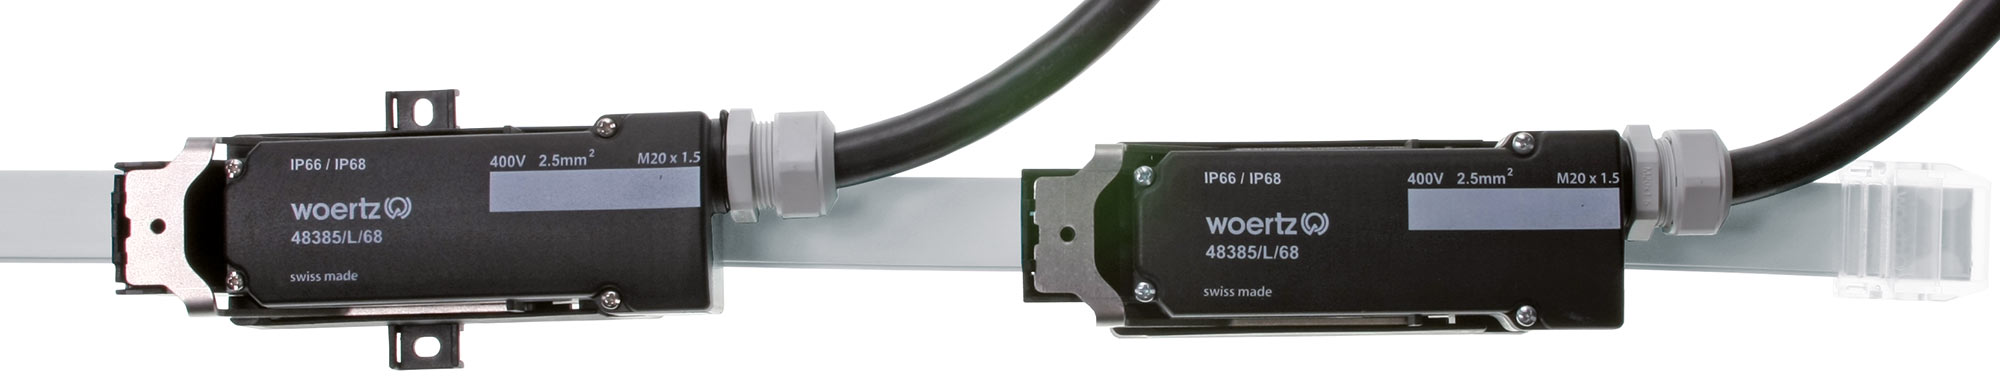 Système de câble plat Power IP 5G6 mm² (IP66/68)